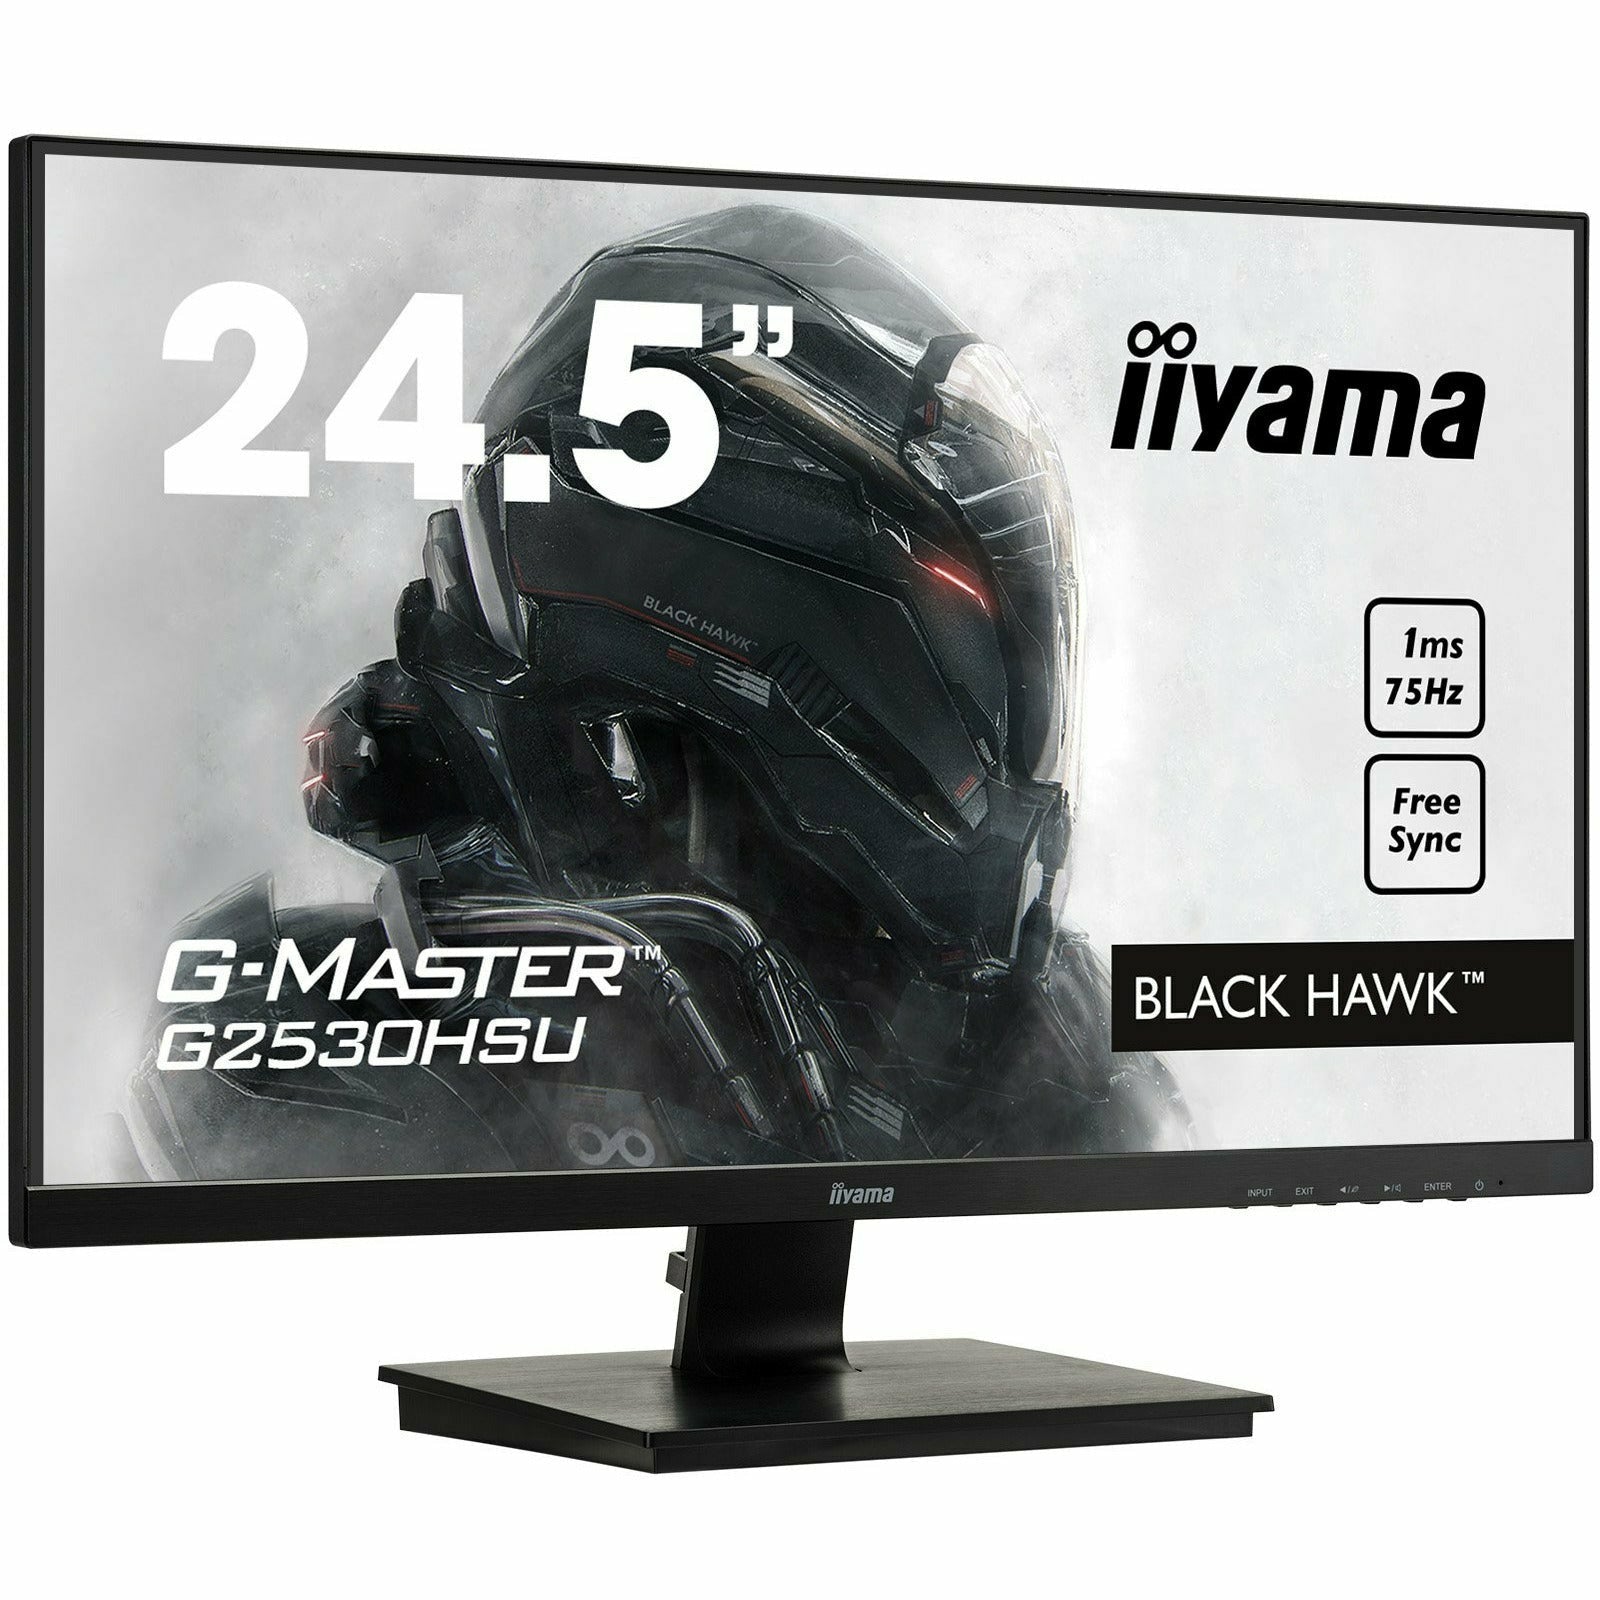 iiyama G-Master G2530HSU-B1 25" Black Hawk Gaming Monitor